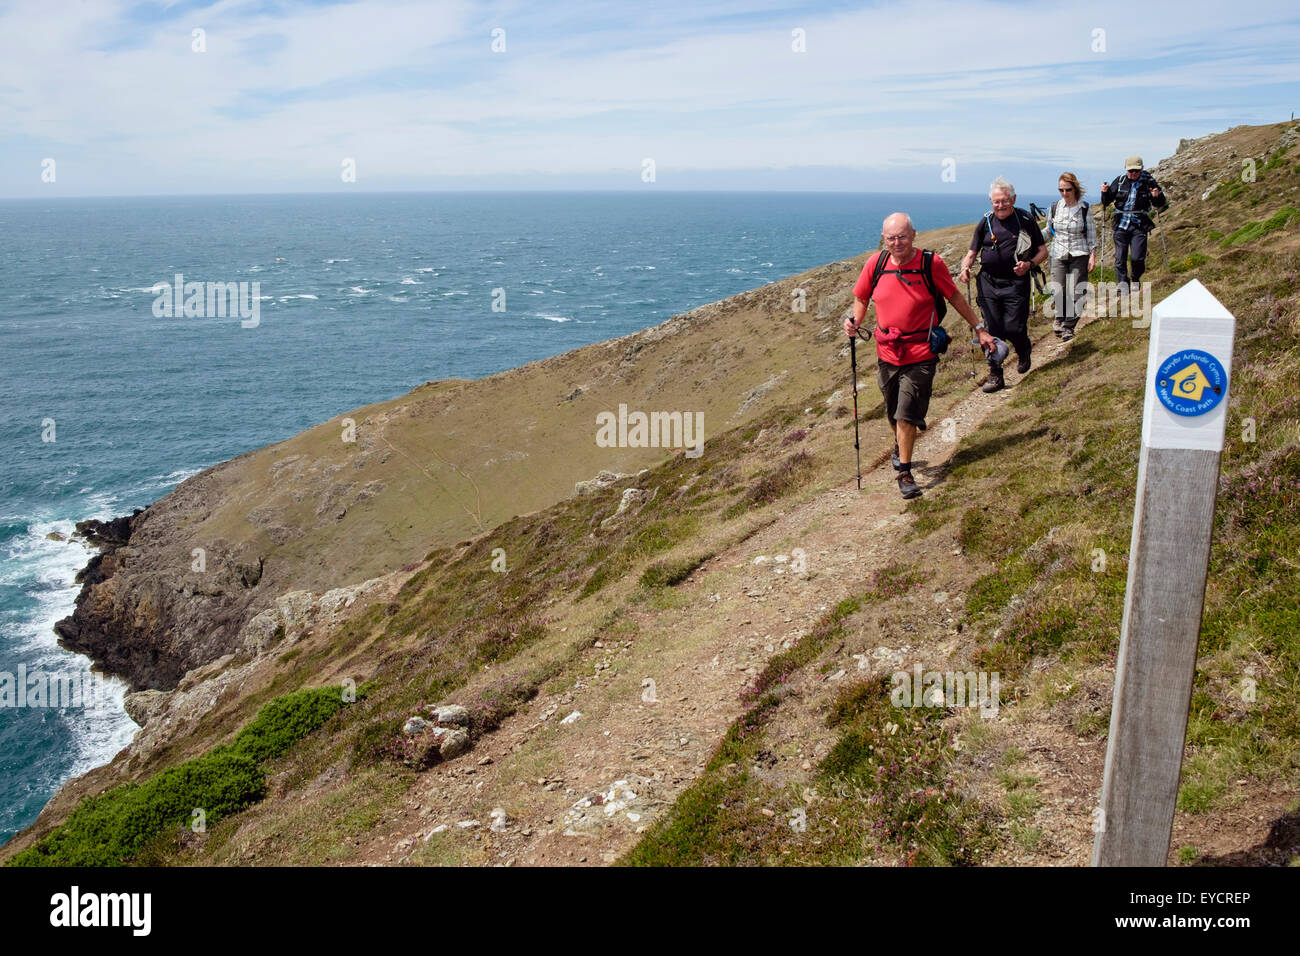 Wanderweg-Zeichen und Wanderer zu Fuß auf steile Engstelle des Wales Küstenweg von Mynydd Mawr Lleyn Halbinsel / Pen Llyn. Gwynedd Wales UK Stockfoto